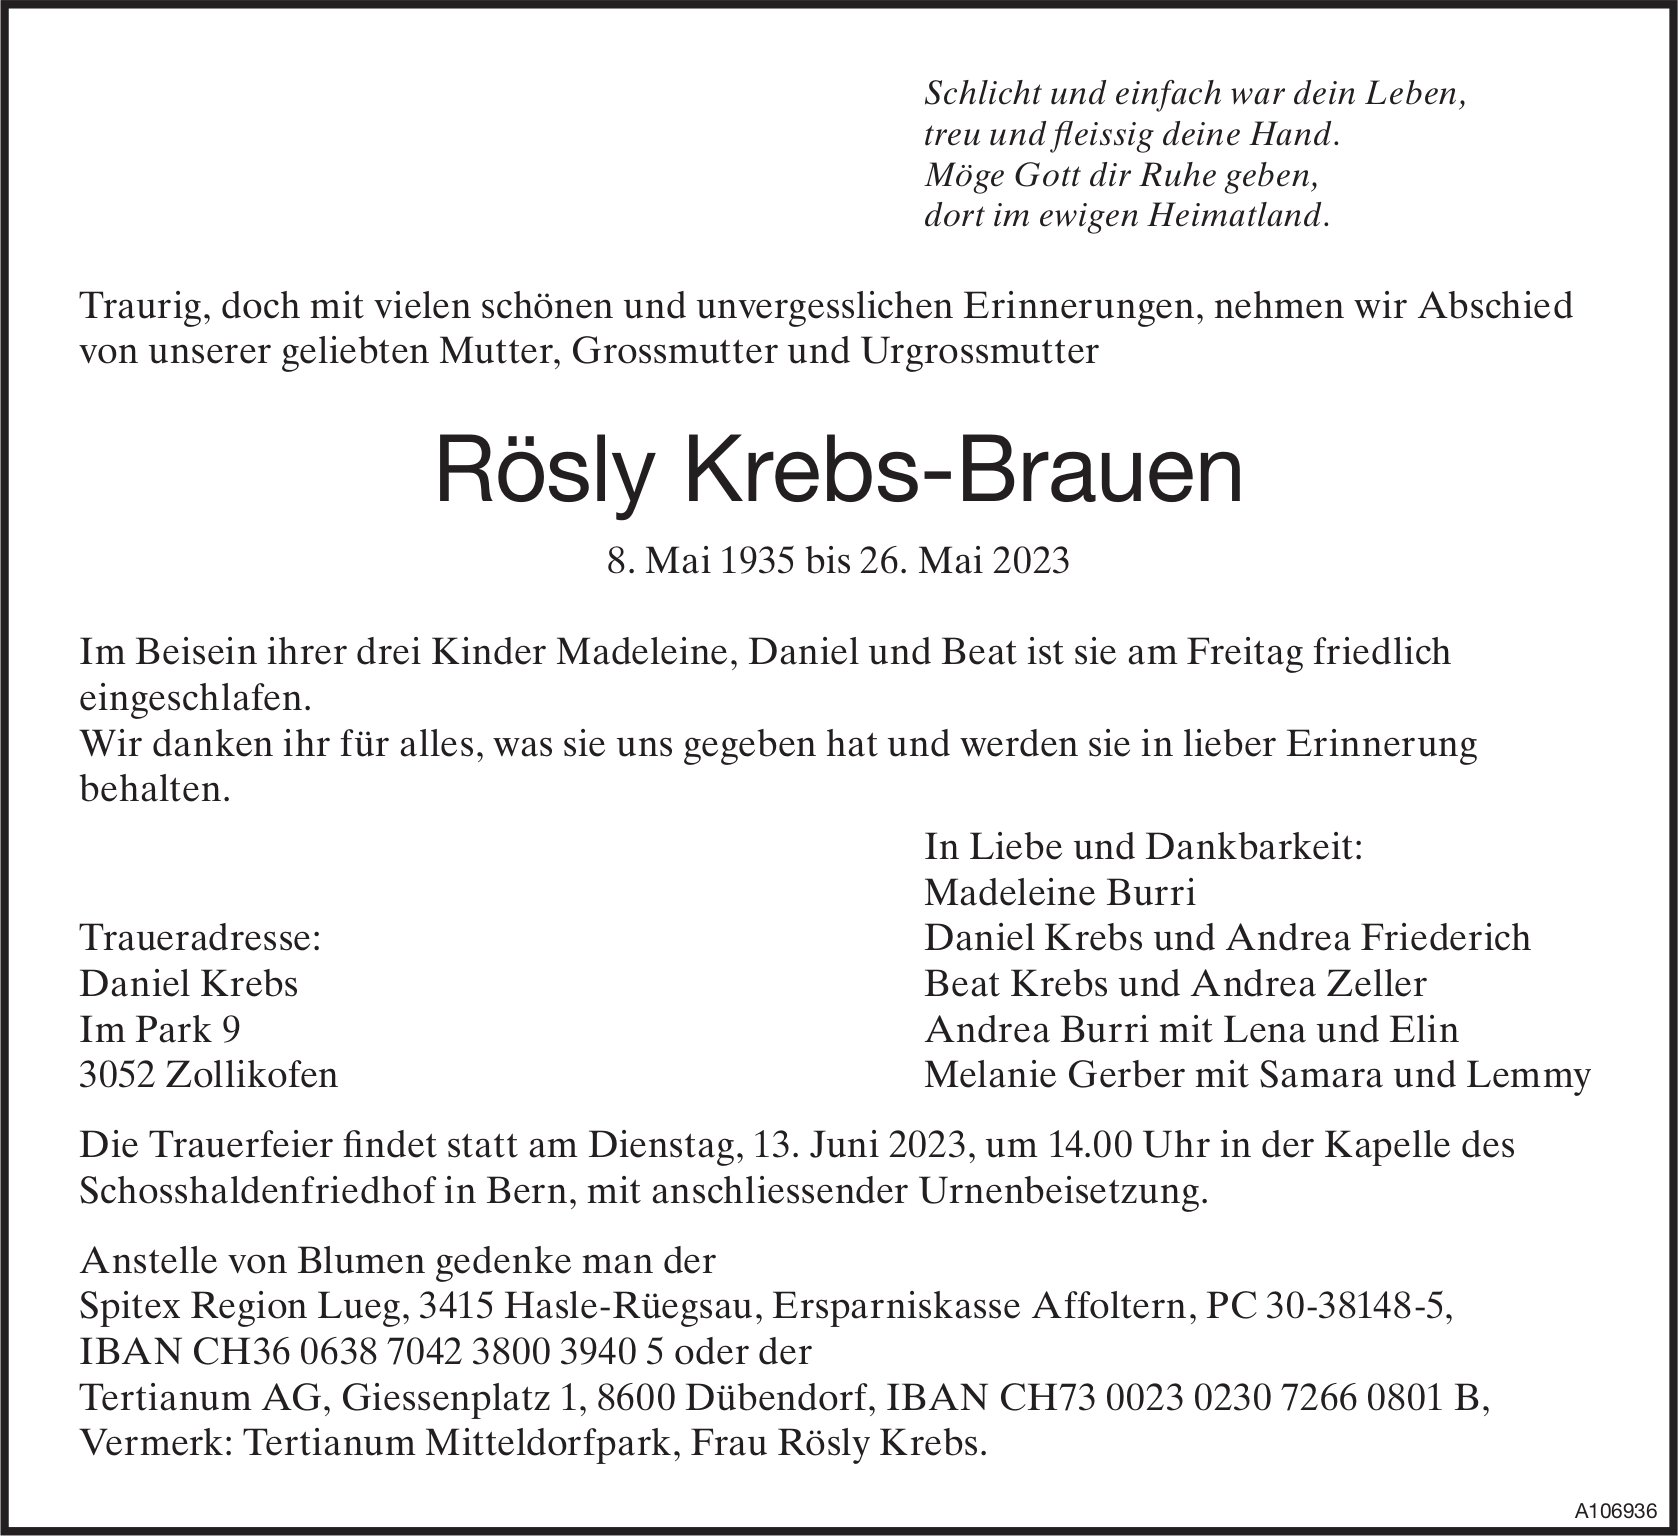 Rösly Krebs-Brauen, Mai 2023 / TA